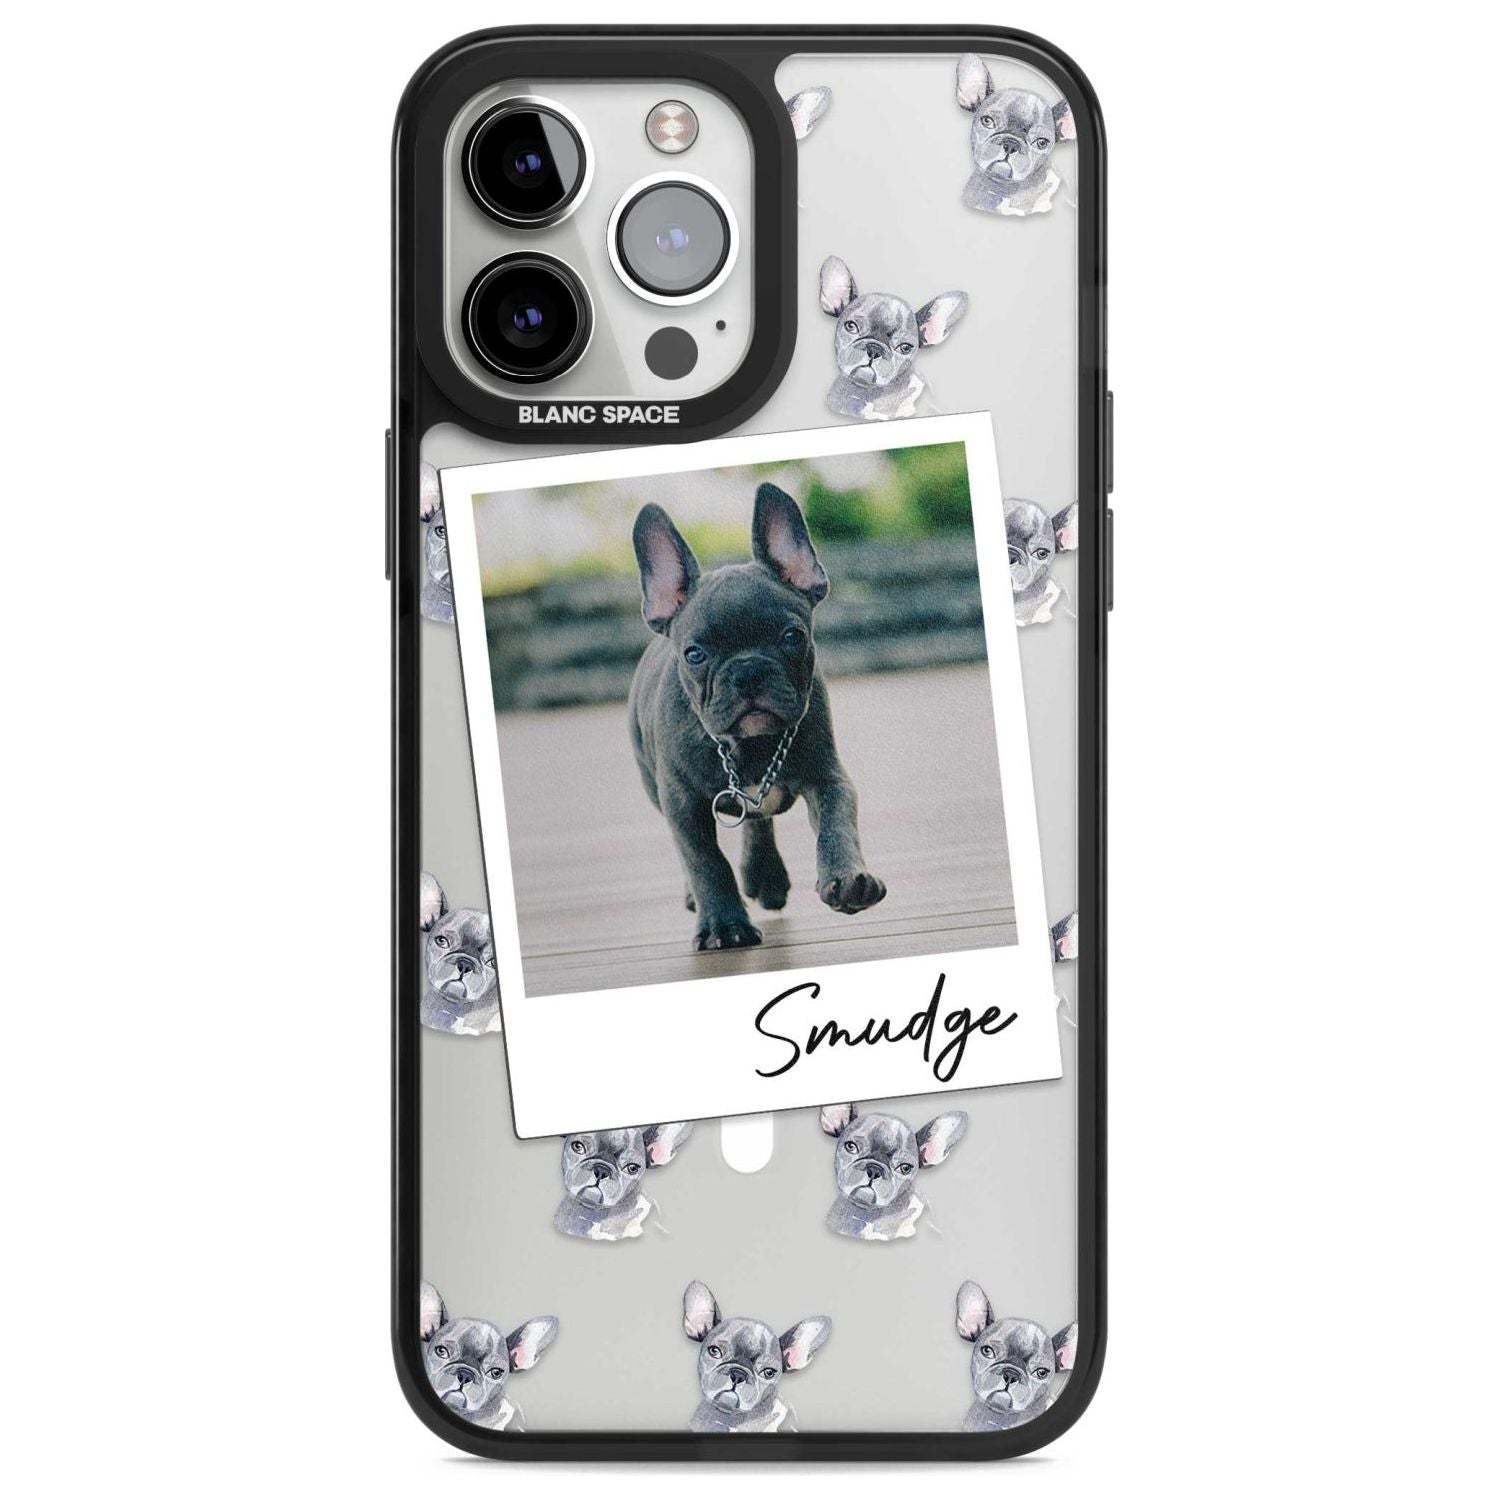 Personalised French Bulldog, Grey - Dog Photo Custom Phone Case iPhone 13 Pro Max / Magsafe Black Impact Case Blanc Space